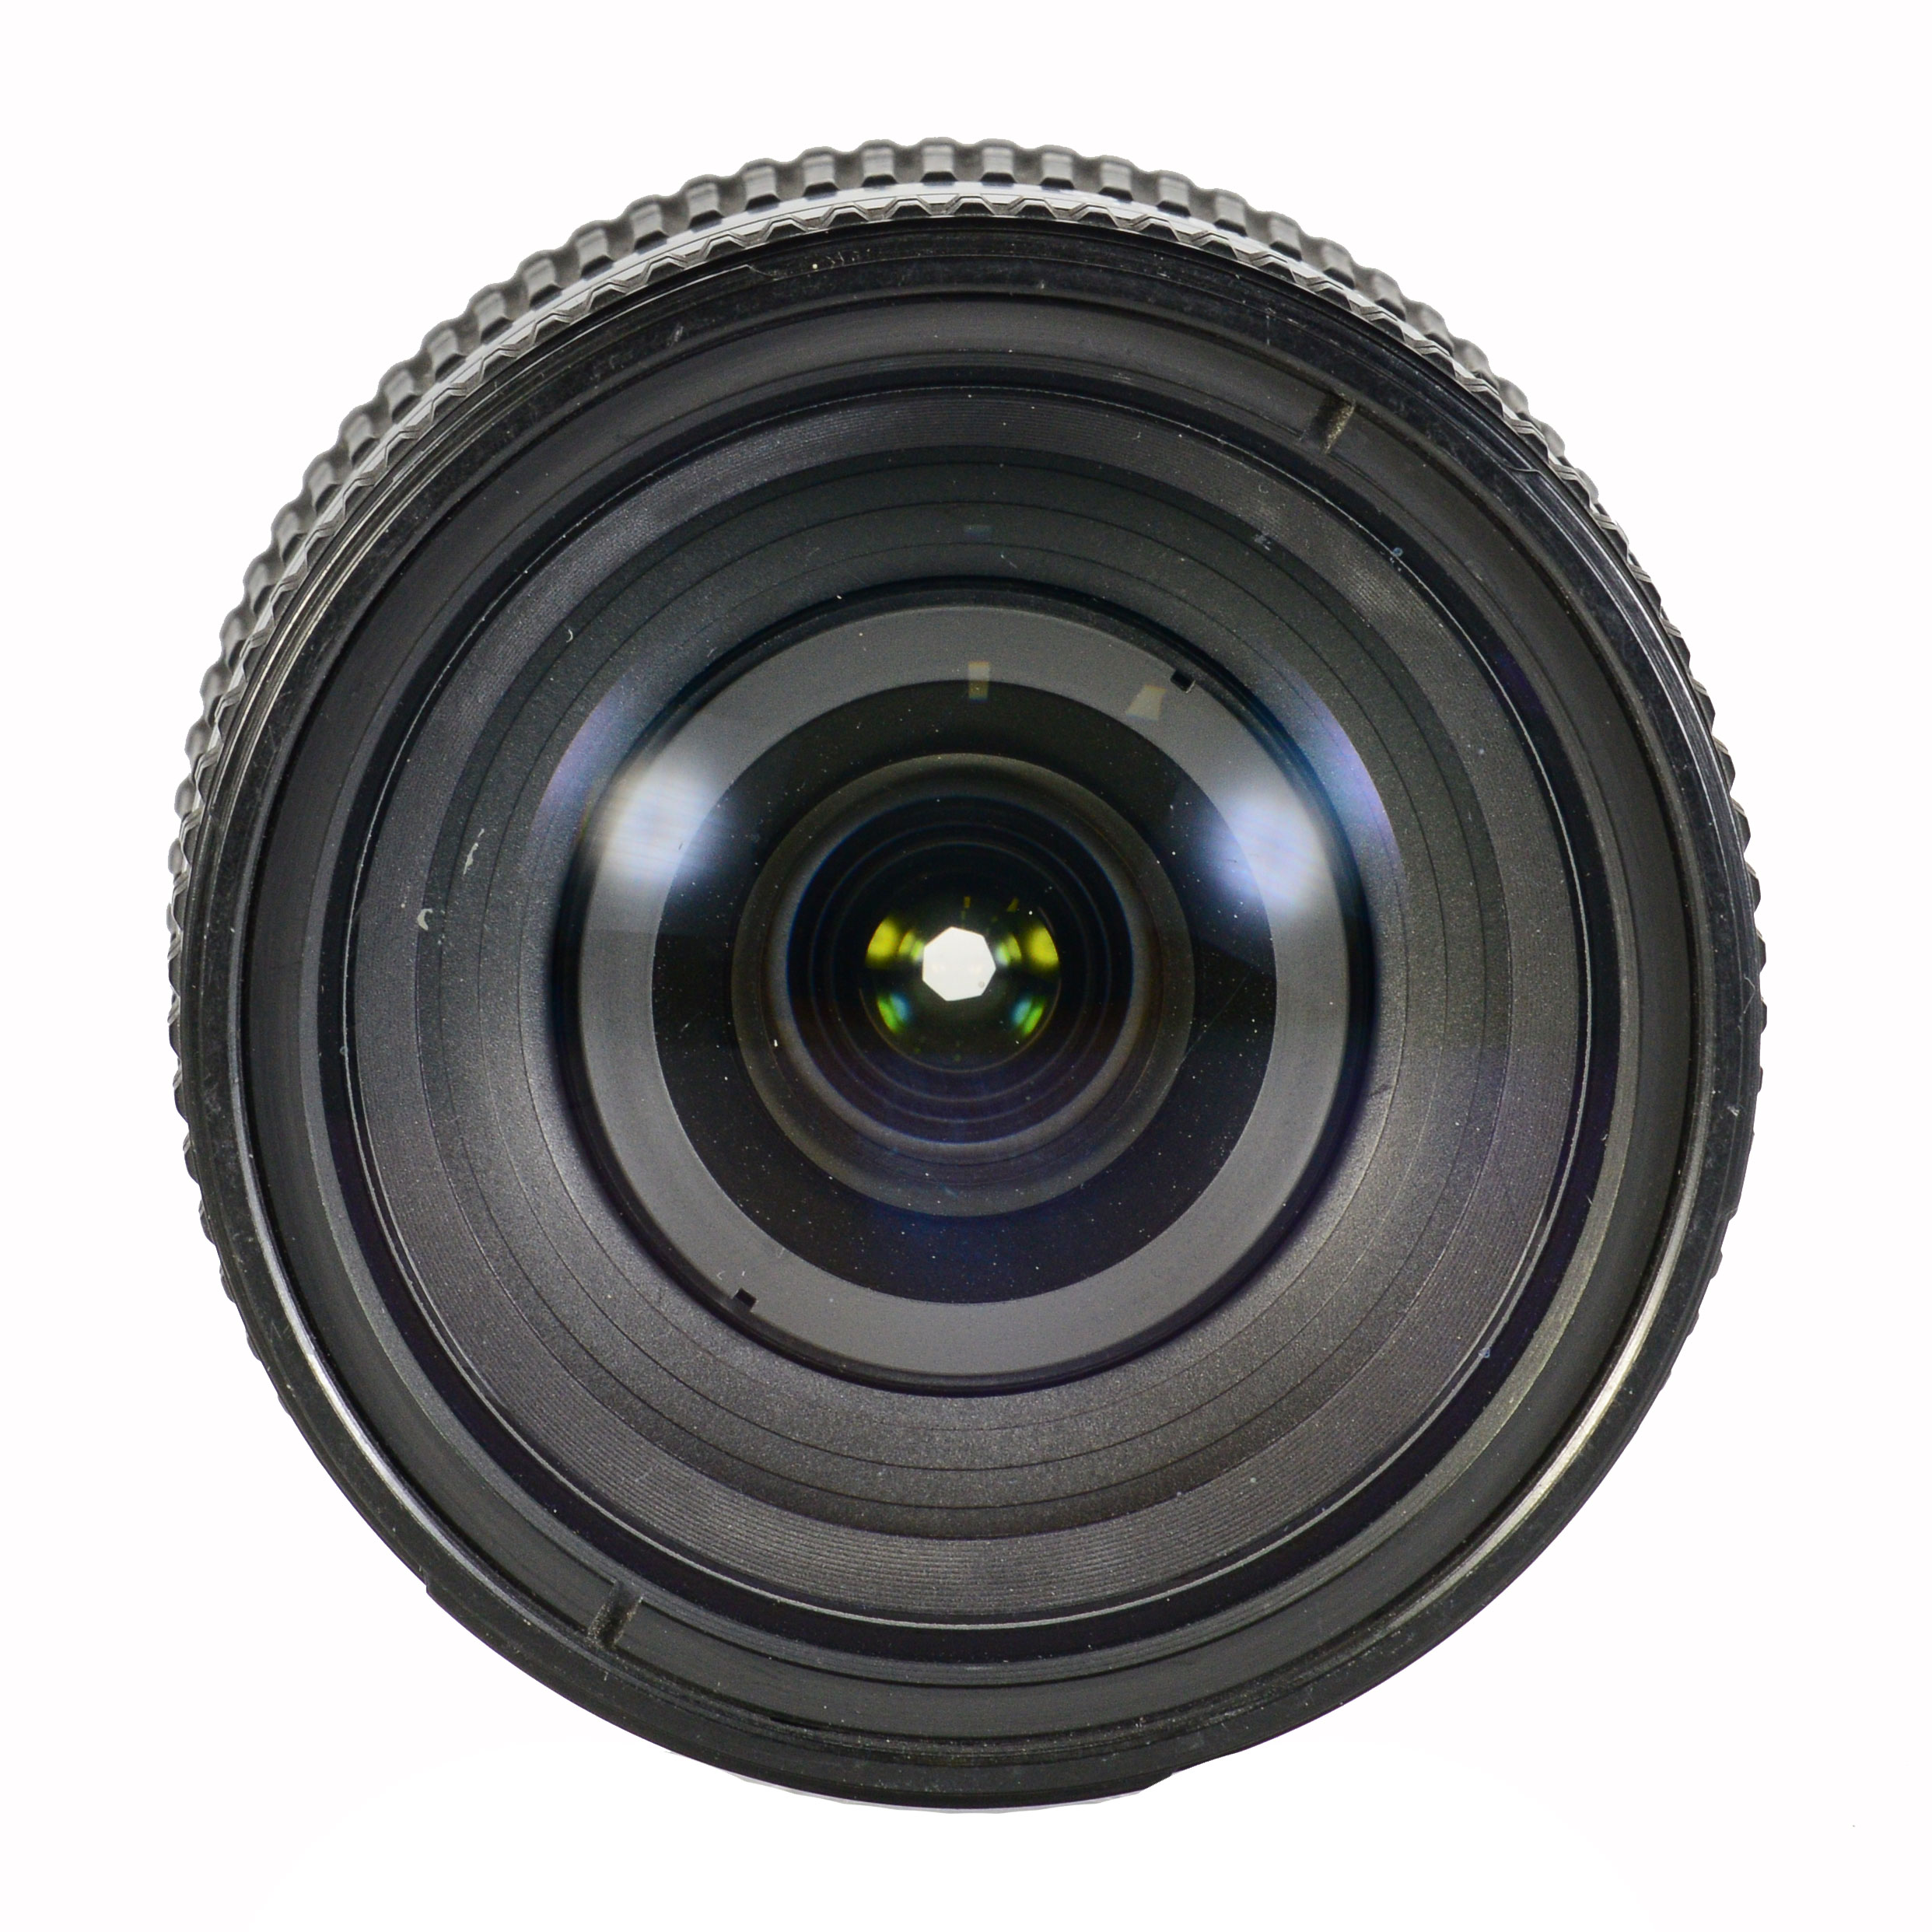 Nikon 24-120mm f/3.5-5.6D IF AF б/у